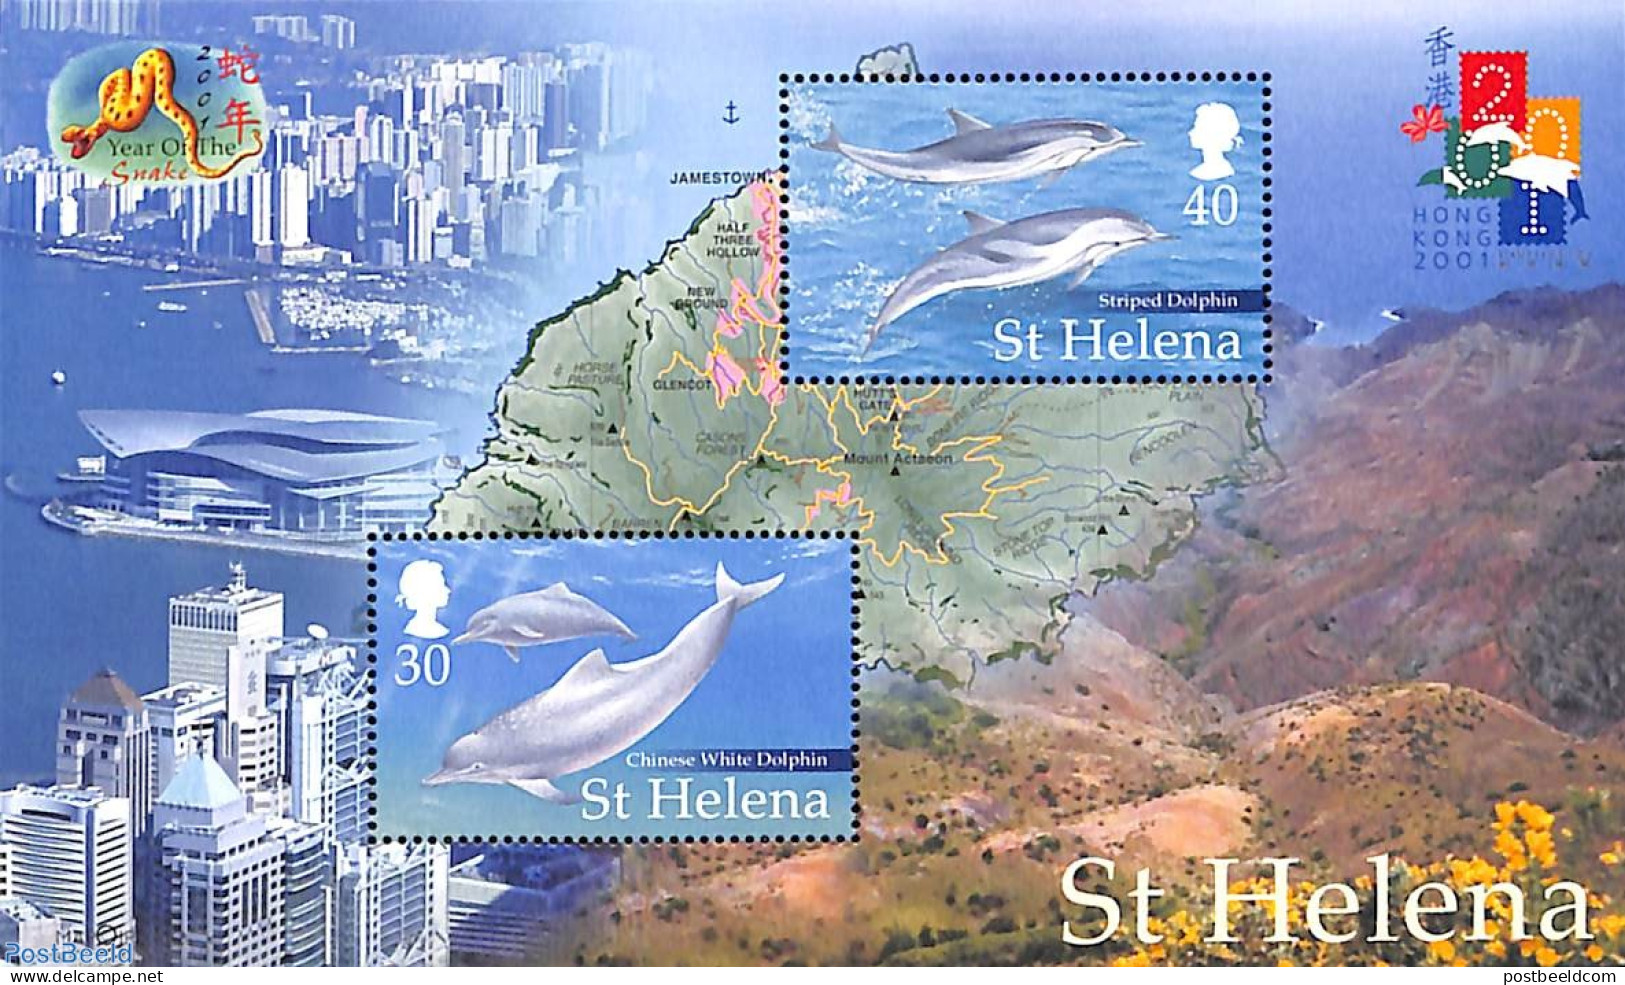 Saint Helena 2001 Hong Kong, Dolphins S/s, Mint NH, Nature - Various - Sea Mammals - Maps - Geography